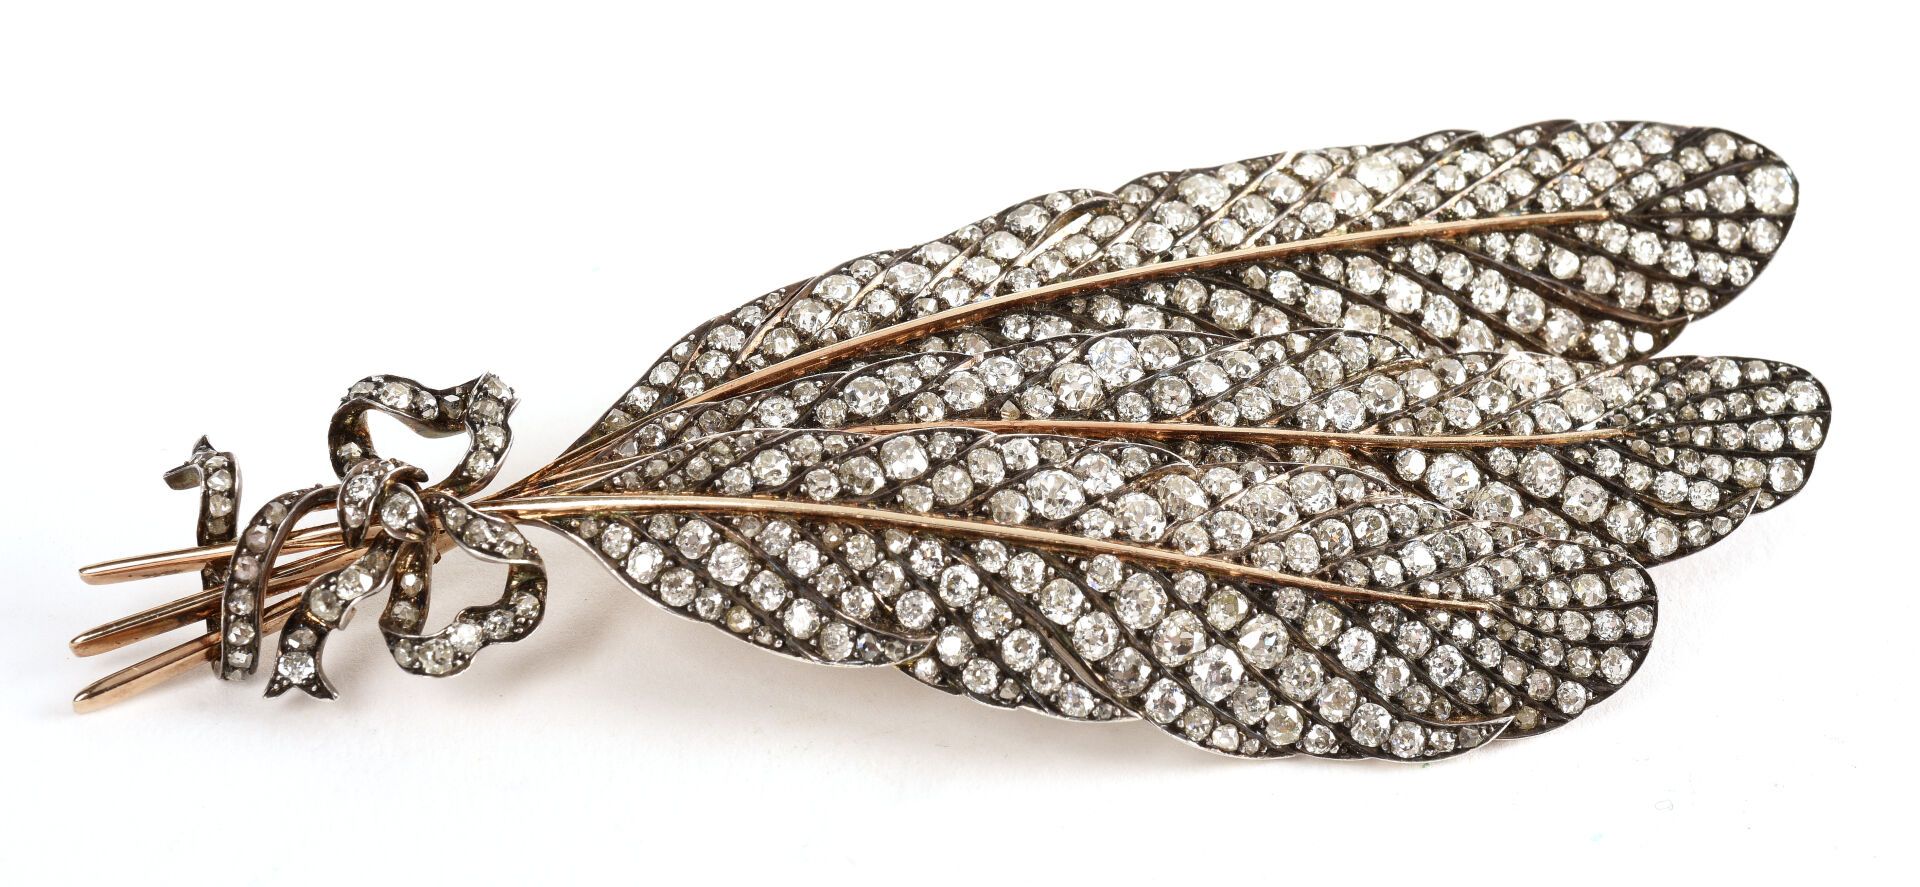 Null 重要的18K黄金（千分之七十五）和银（千分之八十）胸针，造型是由一个 "结 "连接起来的三根羽毛，完全镶嵌着秋季老式切割钻石和粉红色切割钻石。

19&hellip;